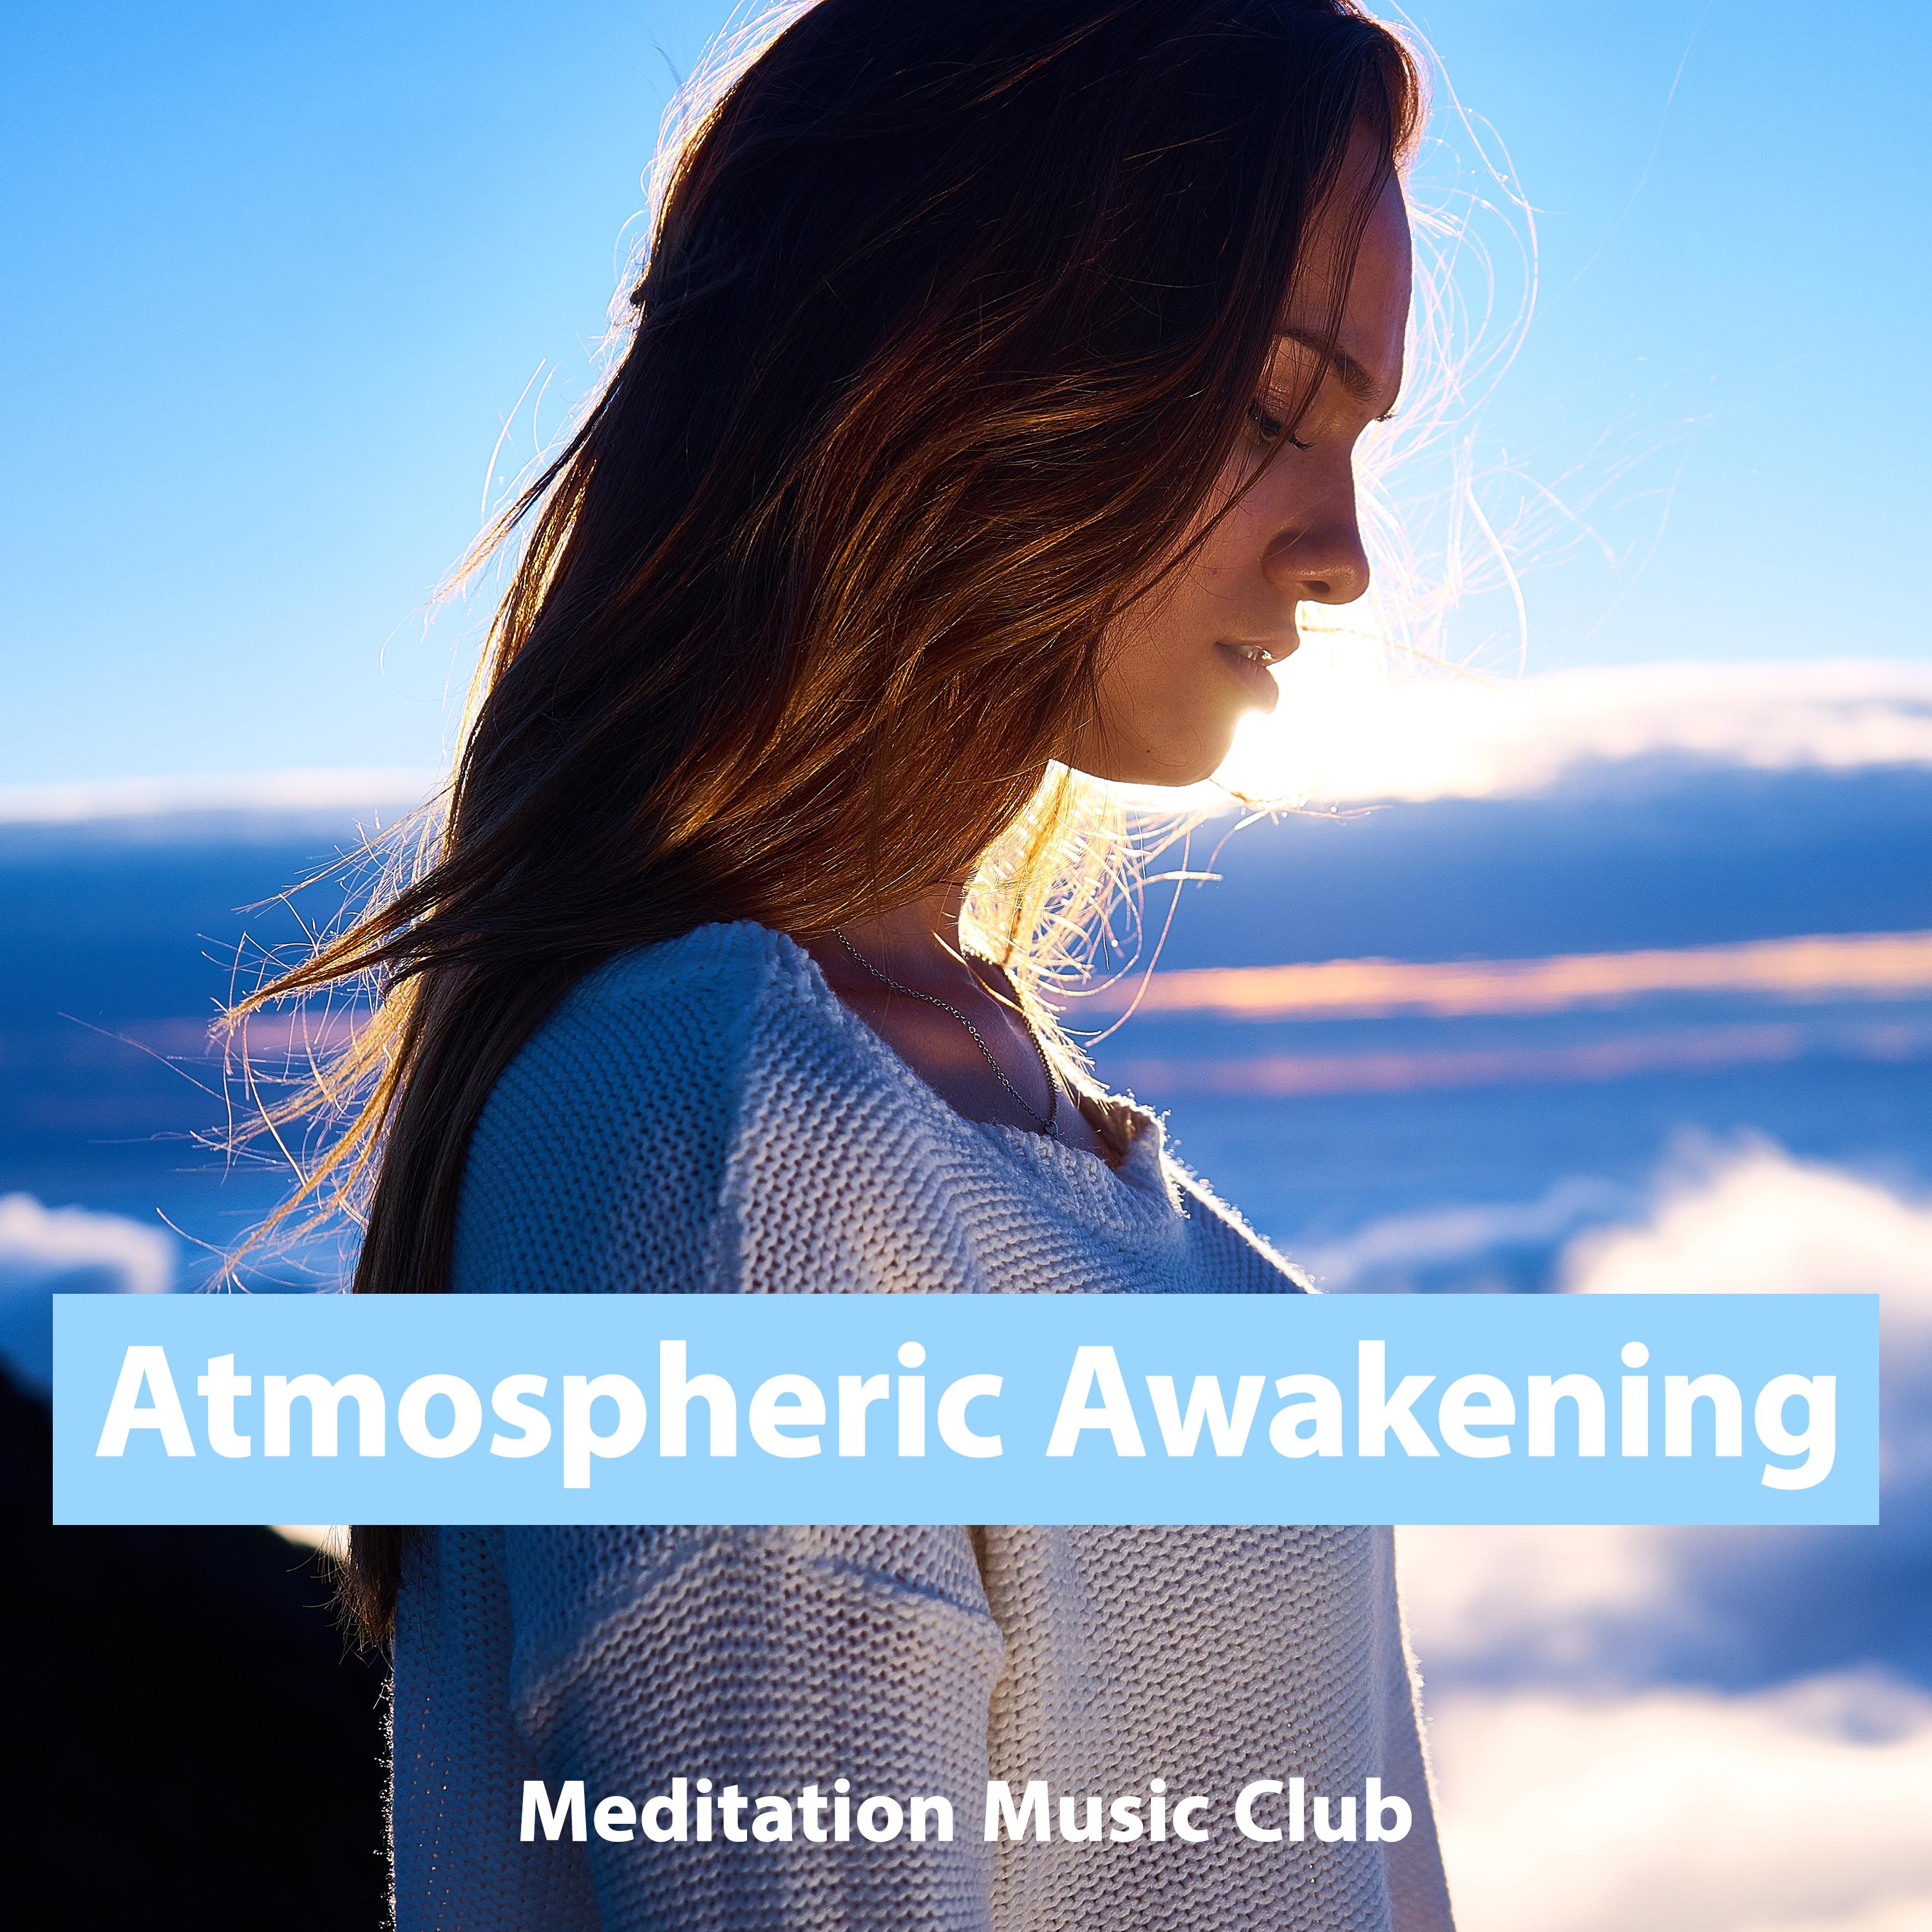 Meditation Music Club